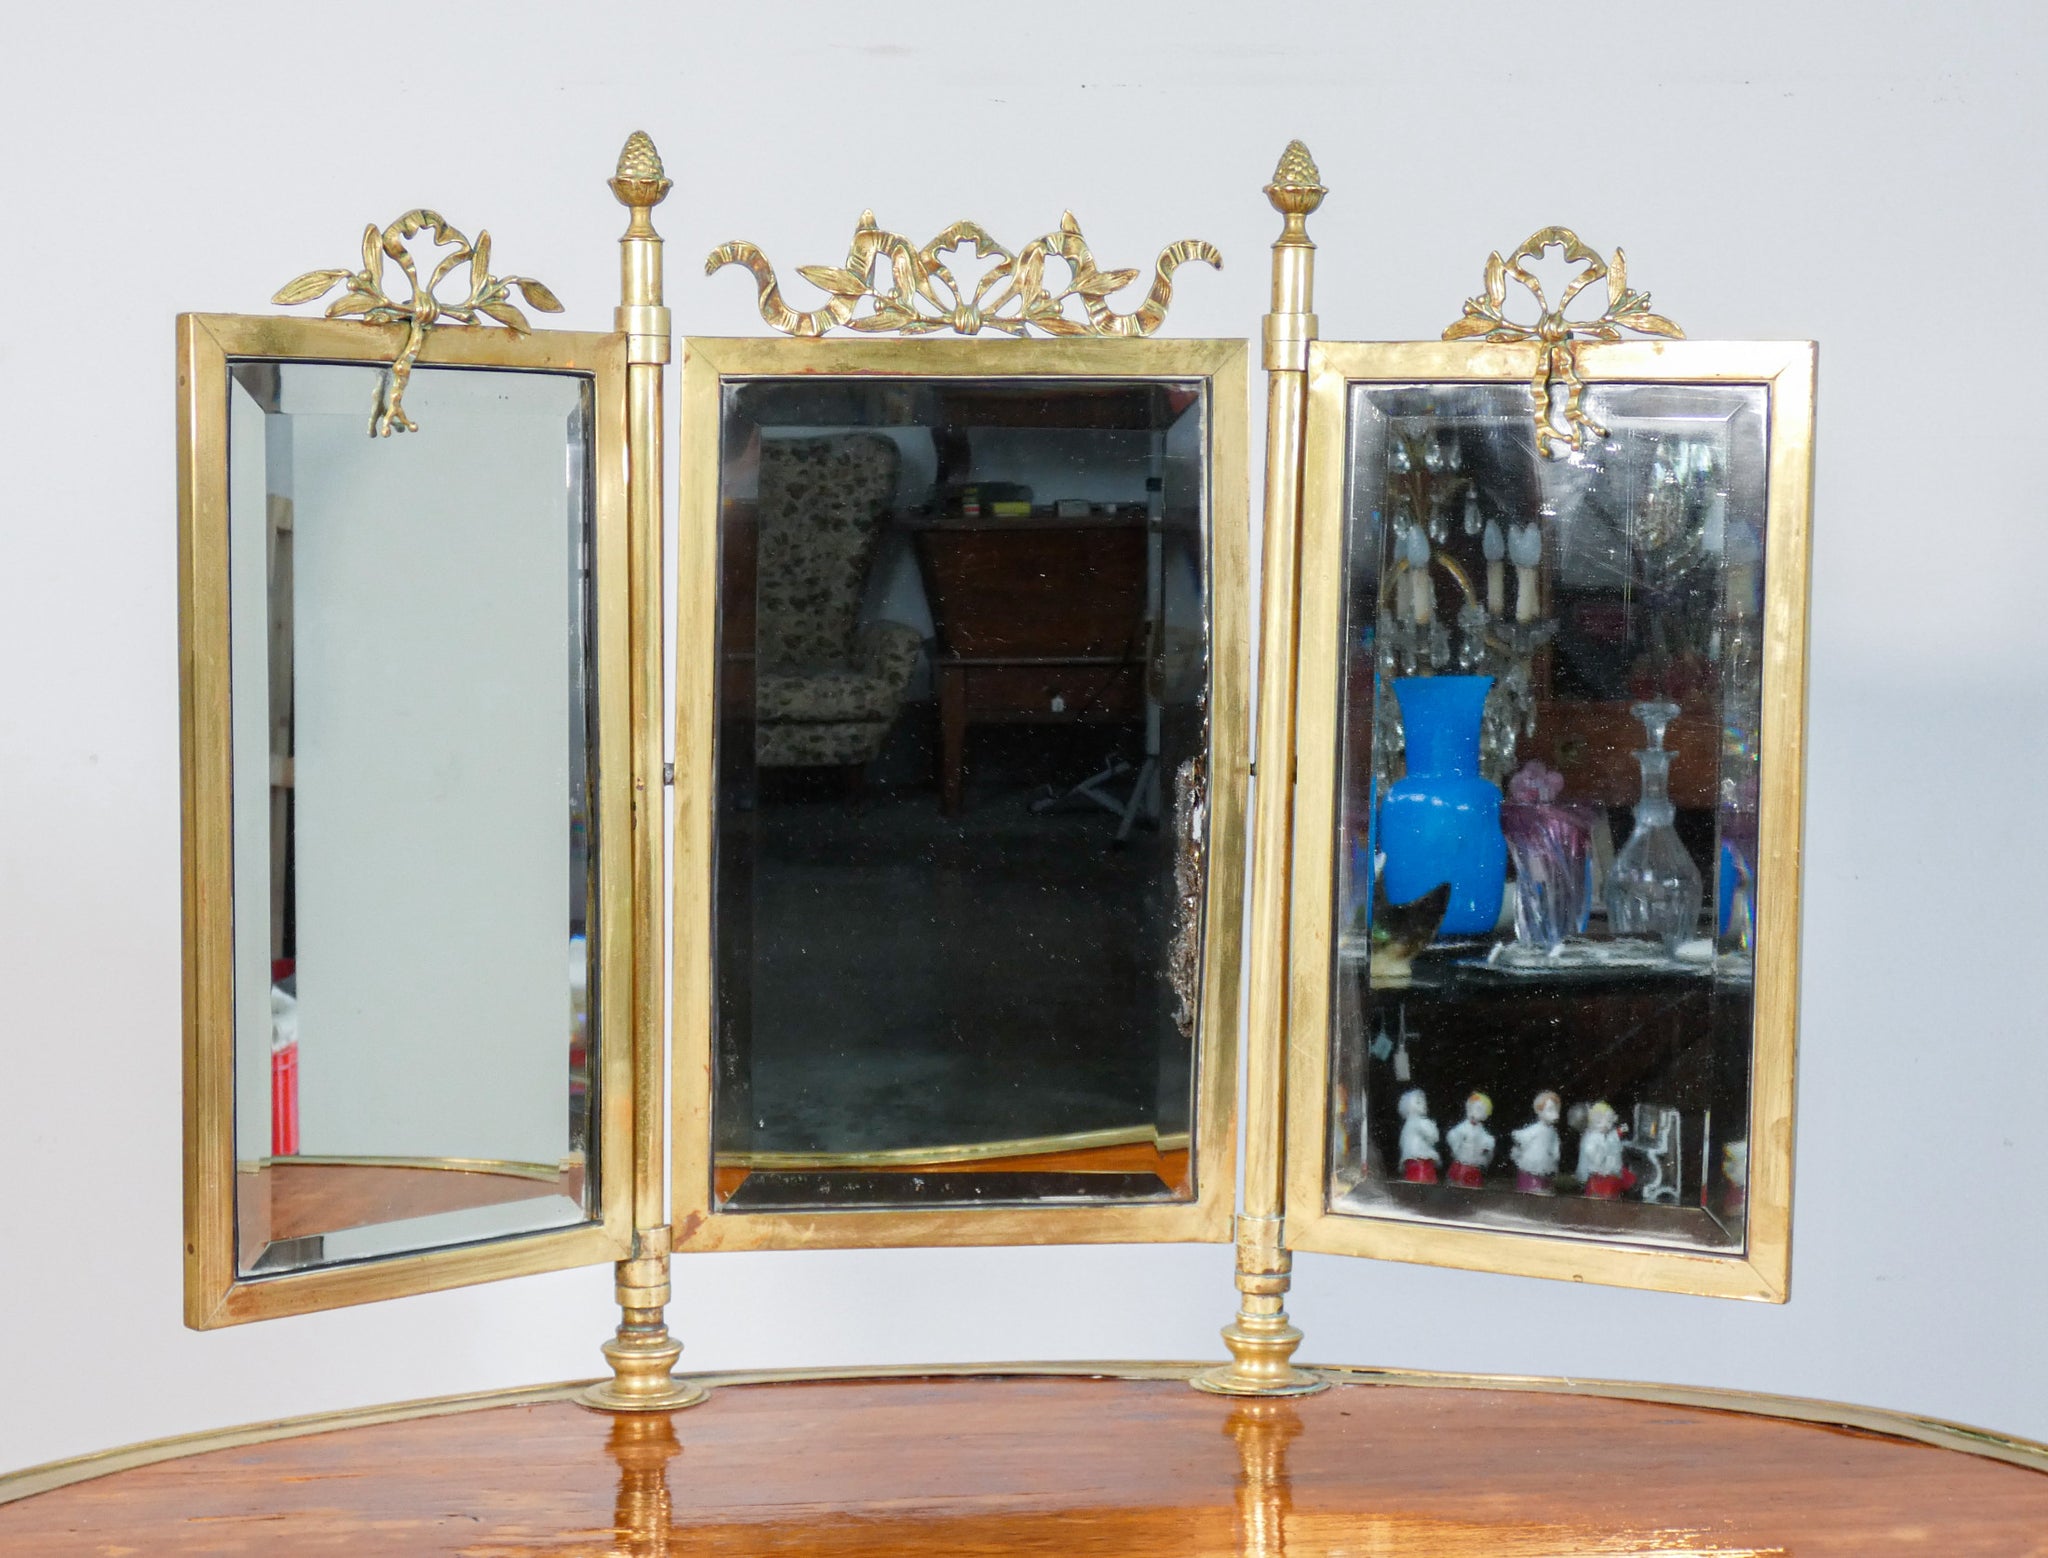 petineuse specchiera toilette liberty legno pioppo specchio psiche mirror